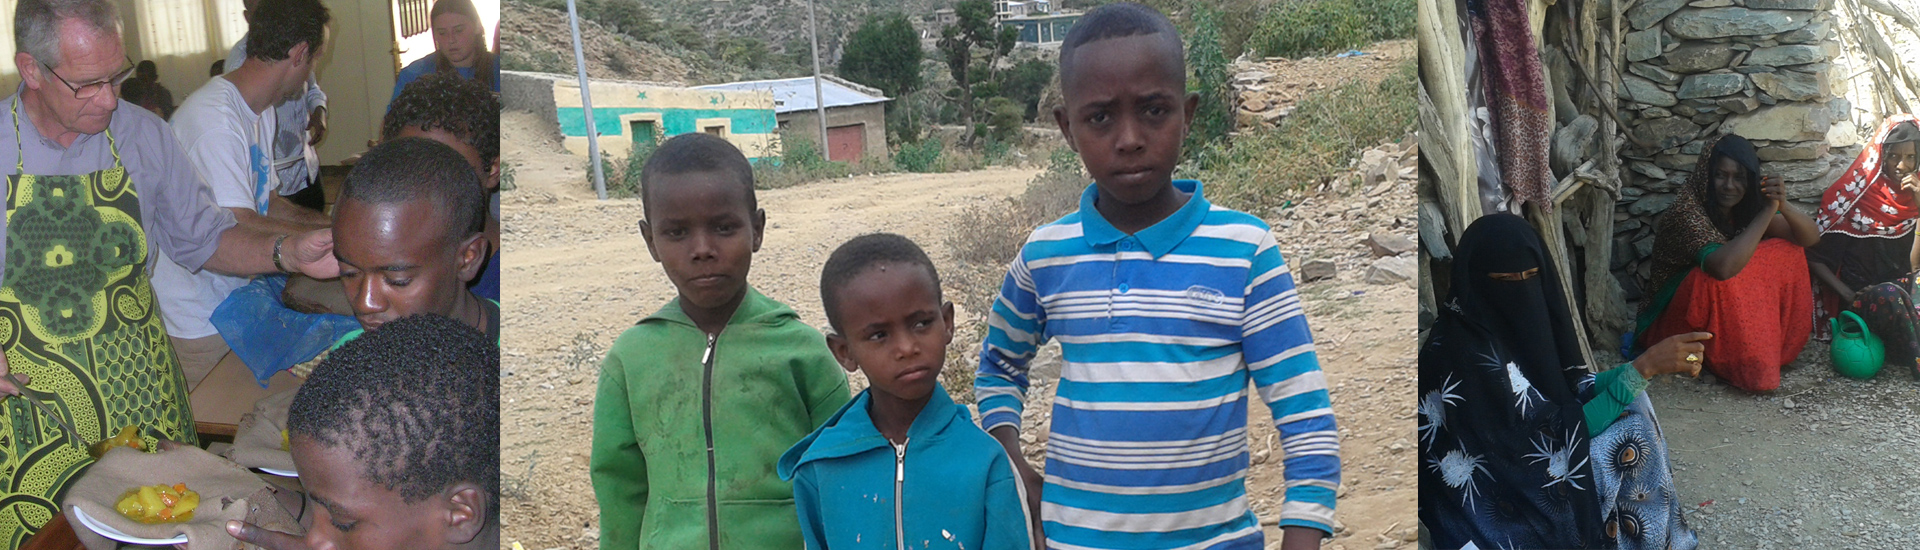 Ayuda humanitaria para 3.000 familias afectadas por la guerra en Etiopía